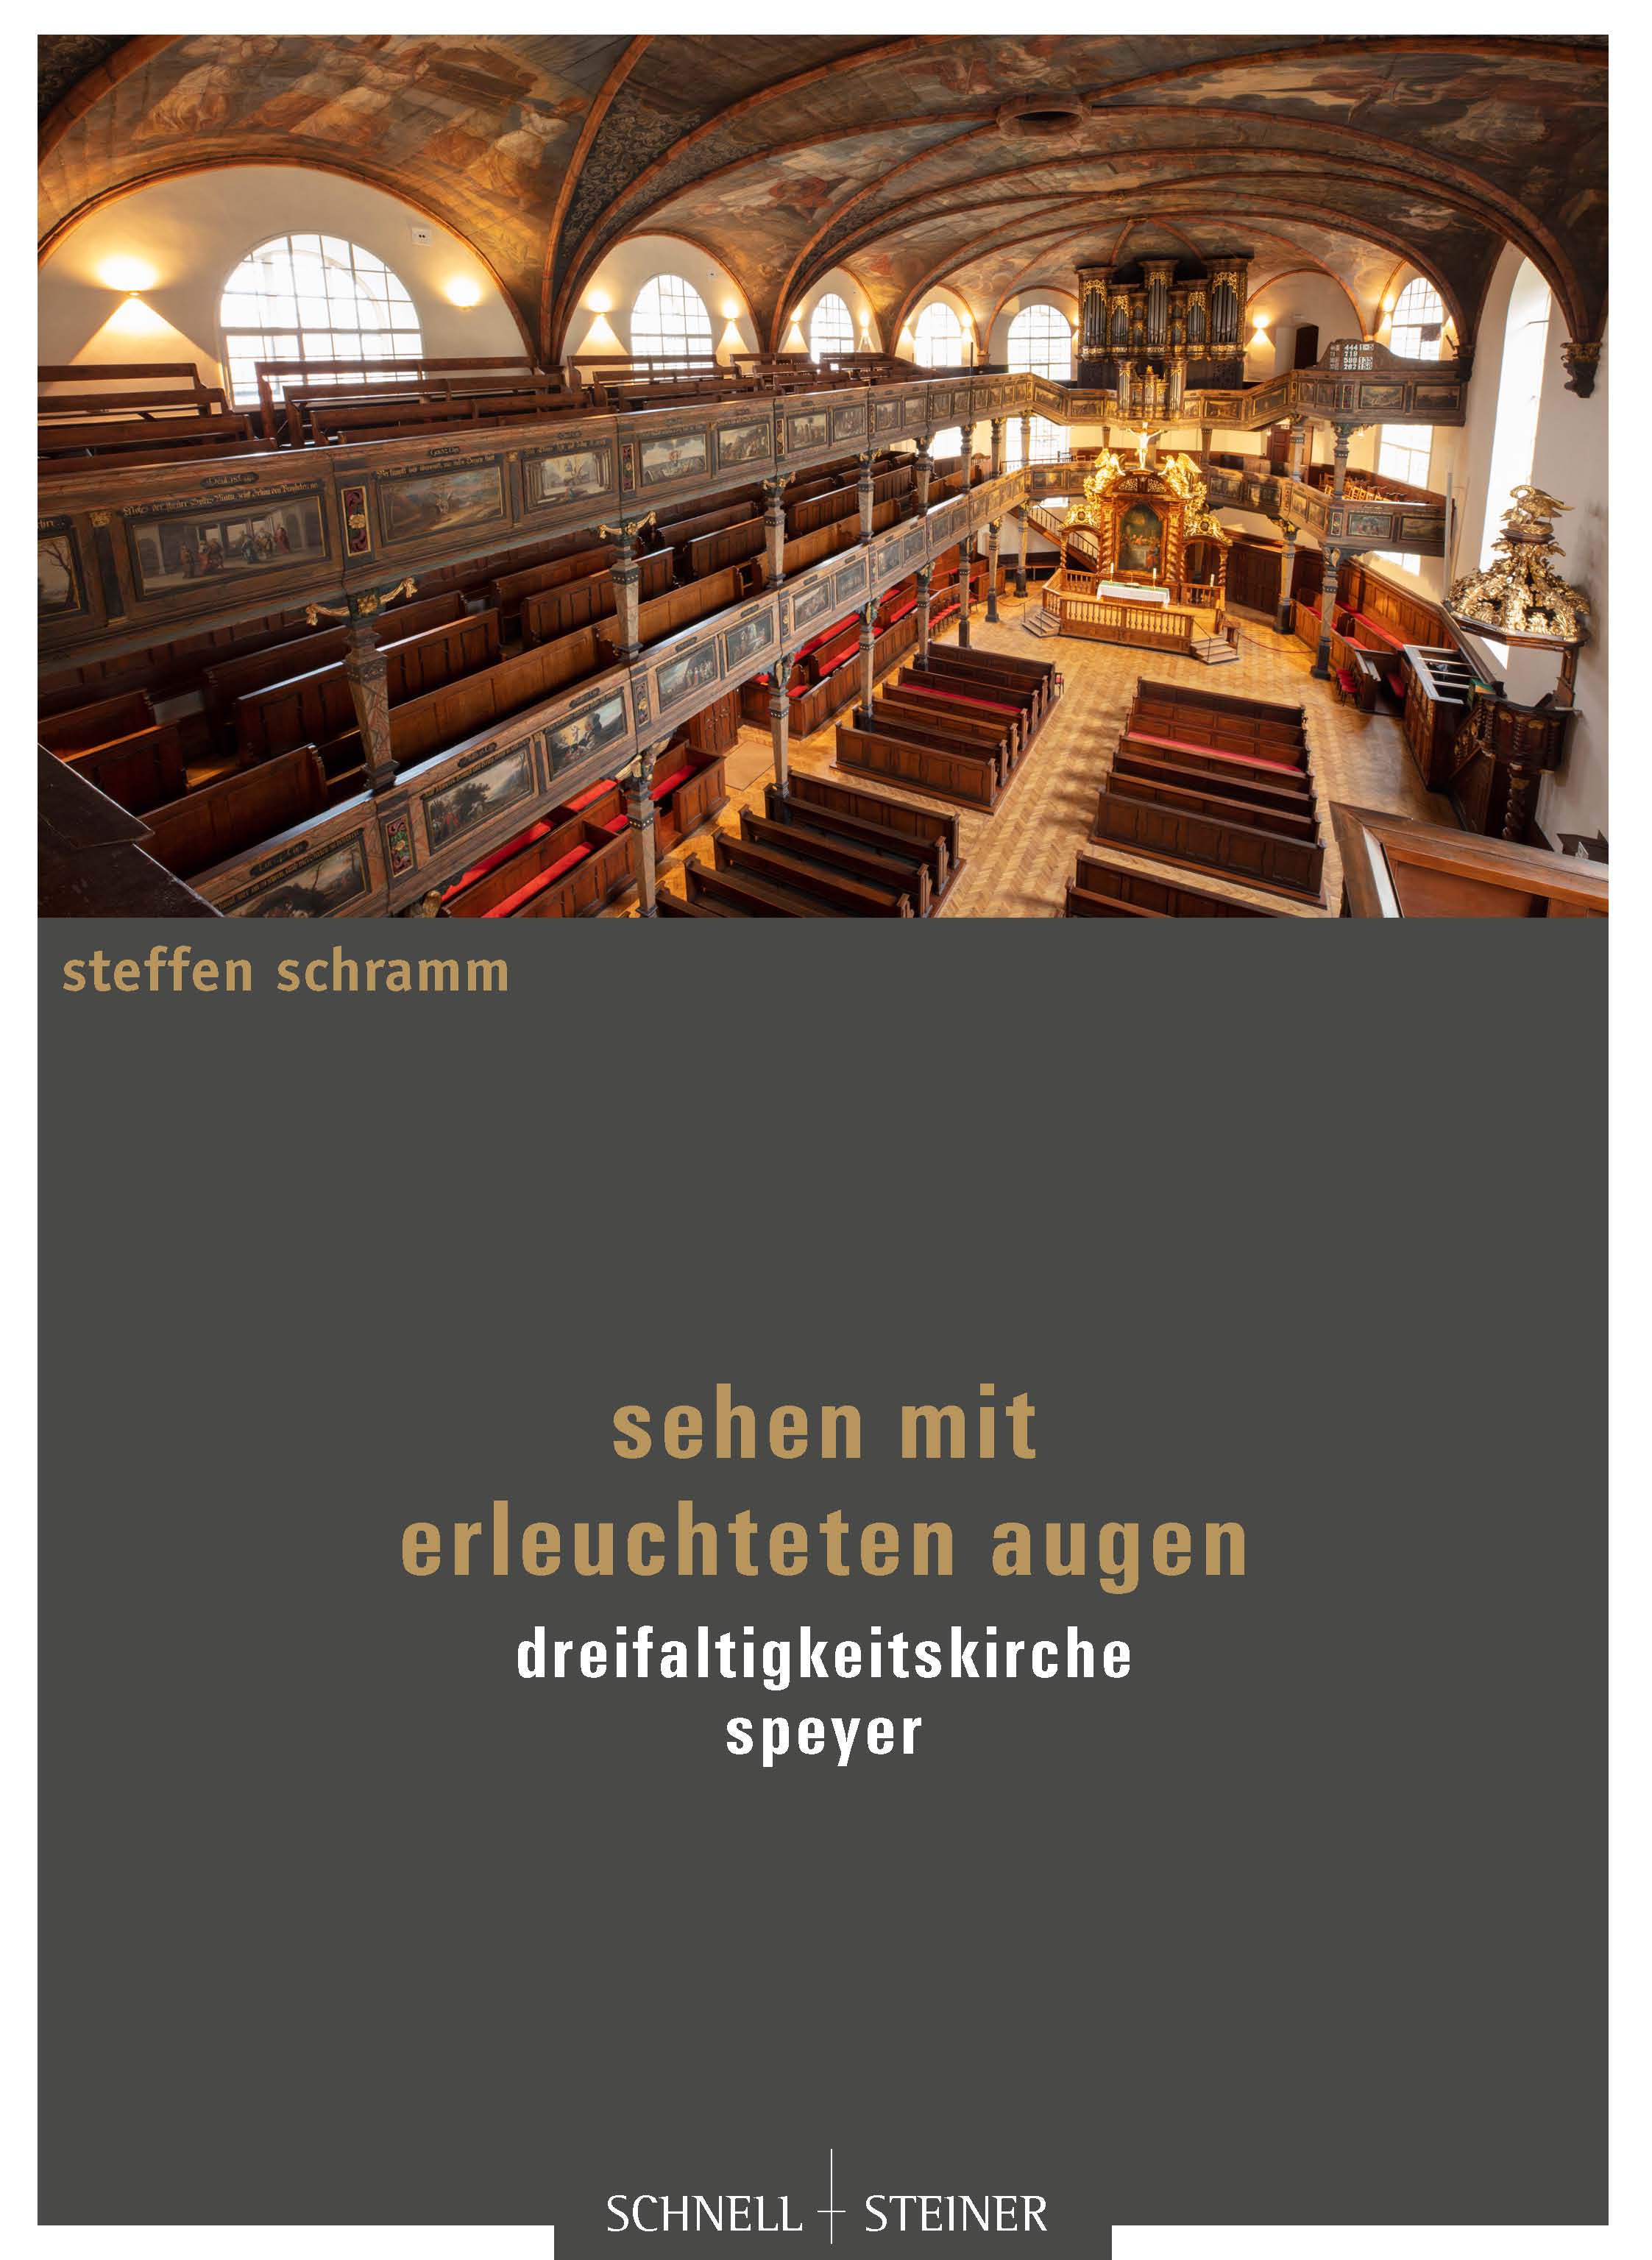 Neuerscheinung zur theologischen Interpretation der Dreifaltigkeitskirche von Steffen Schramm.